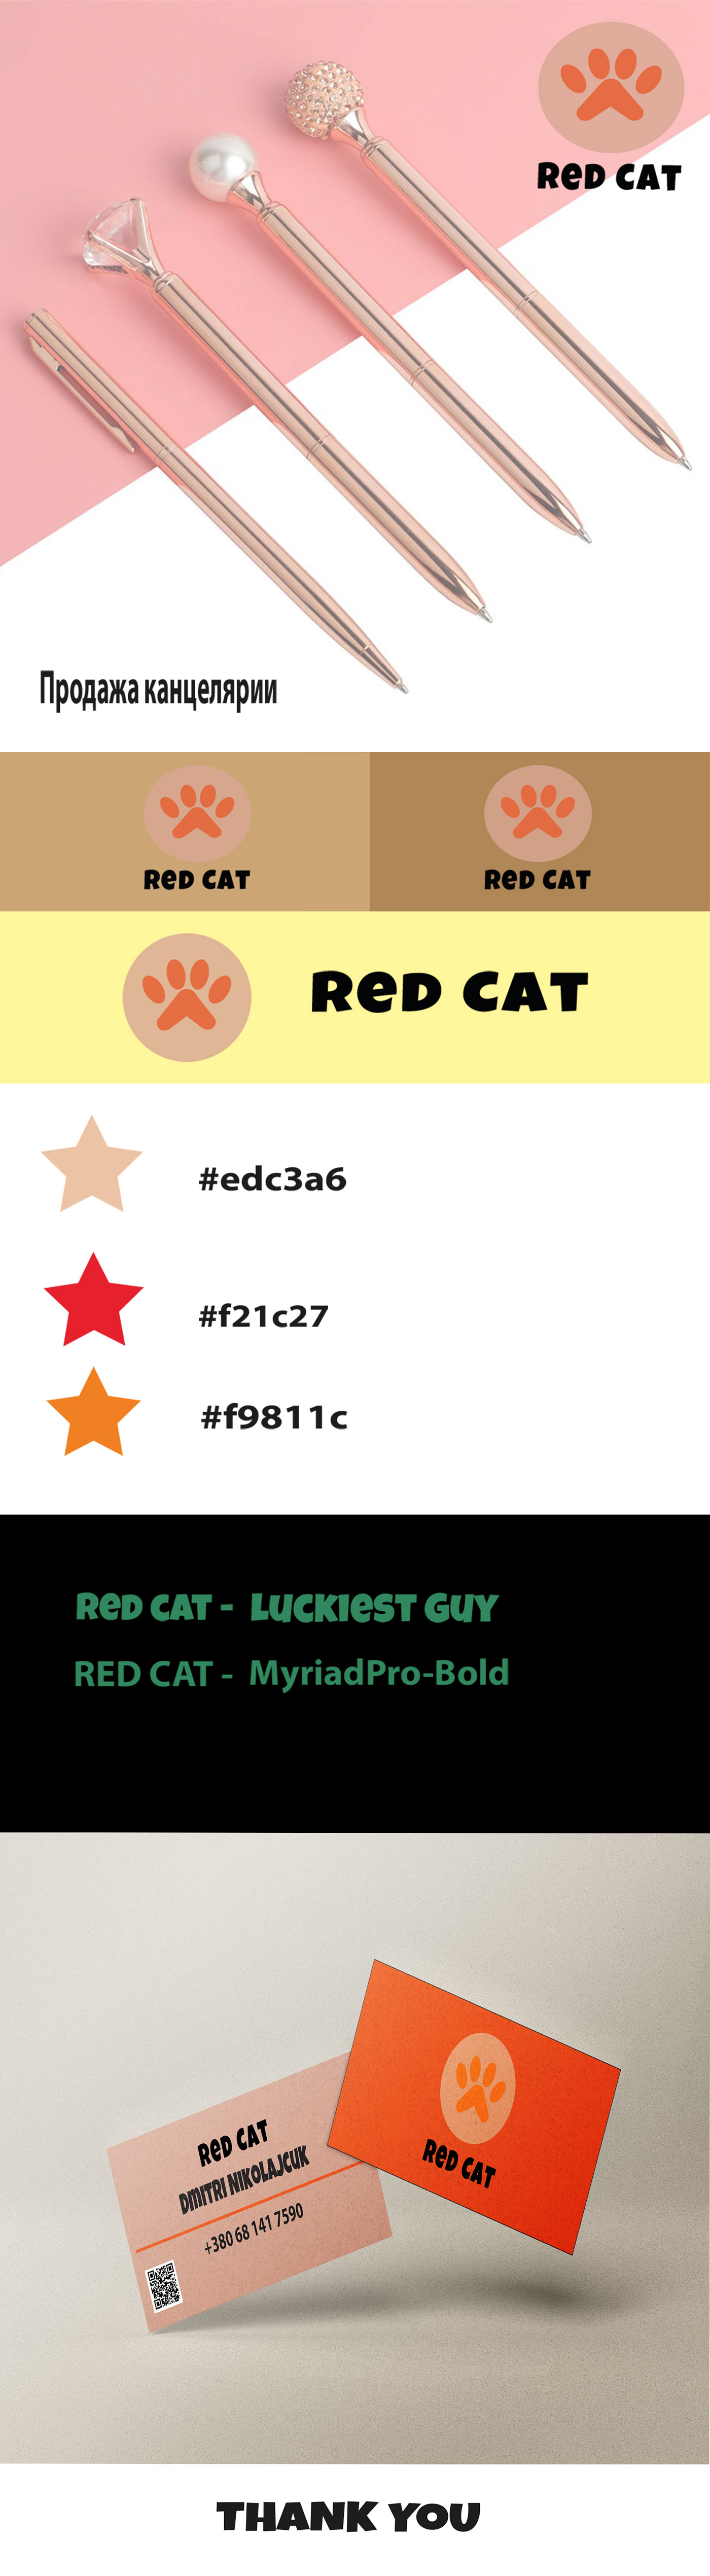 Cat redcat vector visting card